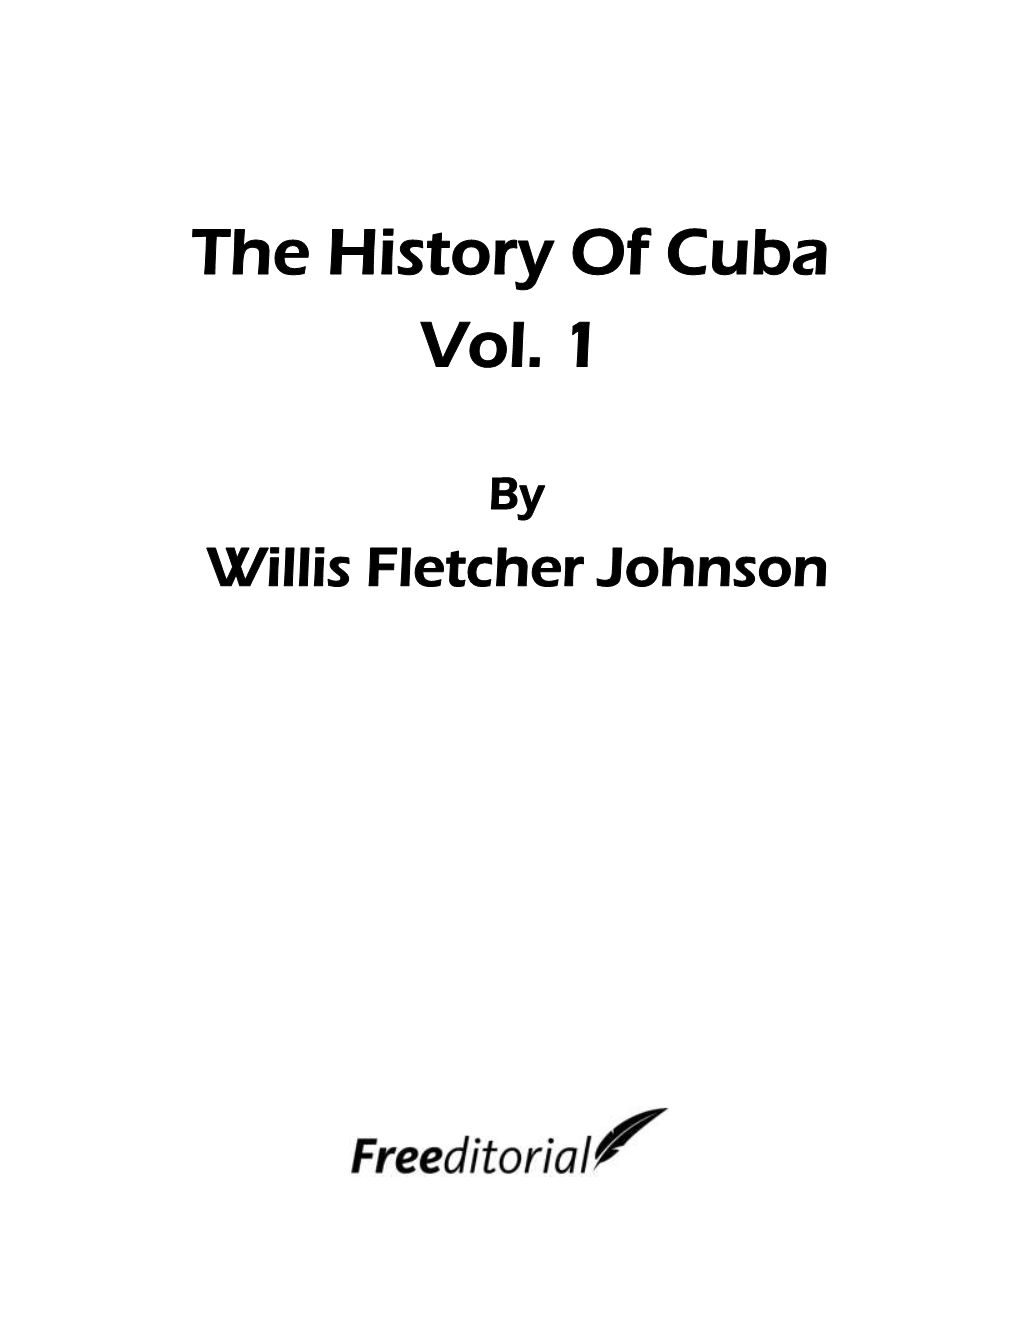 The History of Cuba Vol. 1